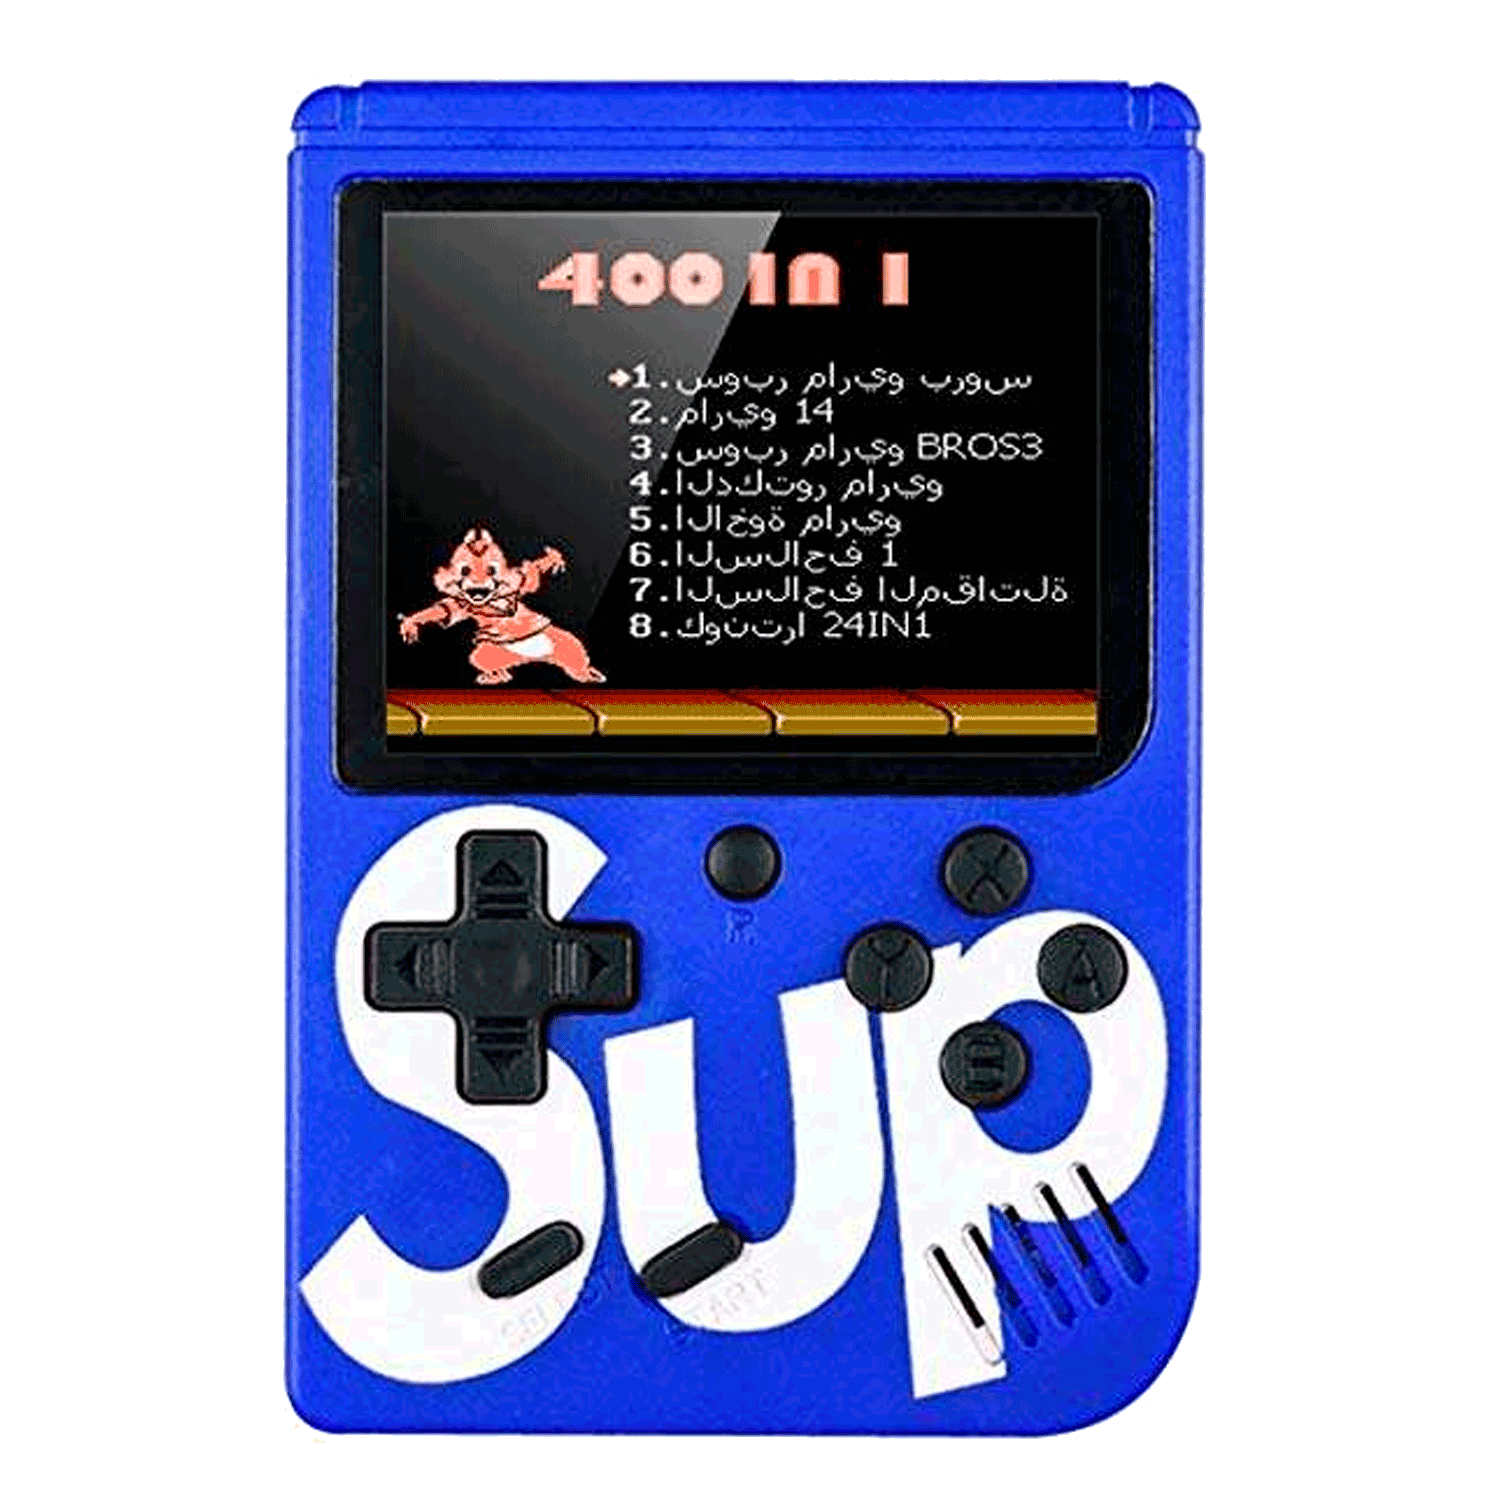 Console Game Boy Game Box Sup 400 em 1 - Azul